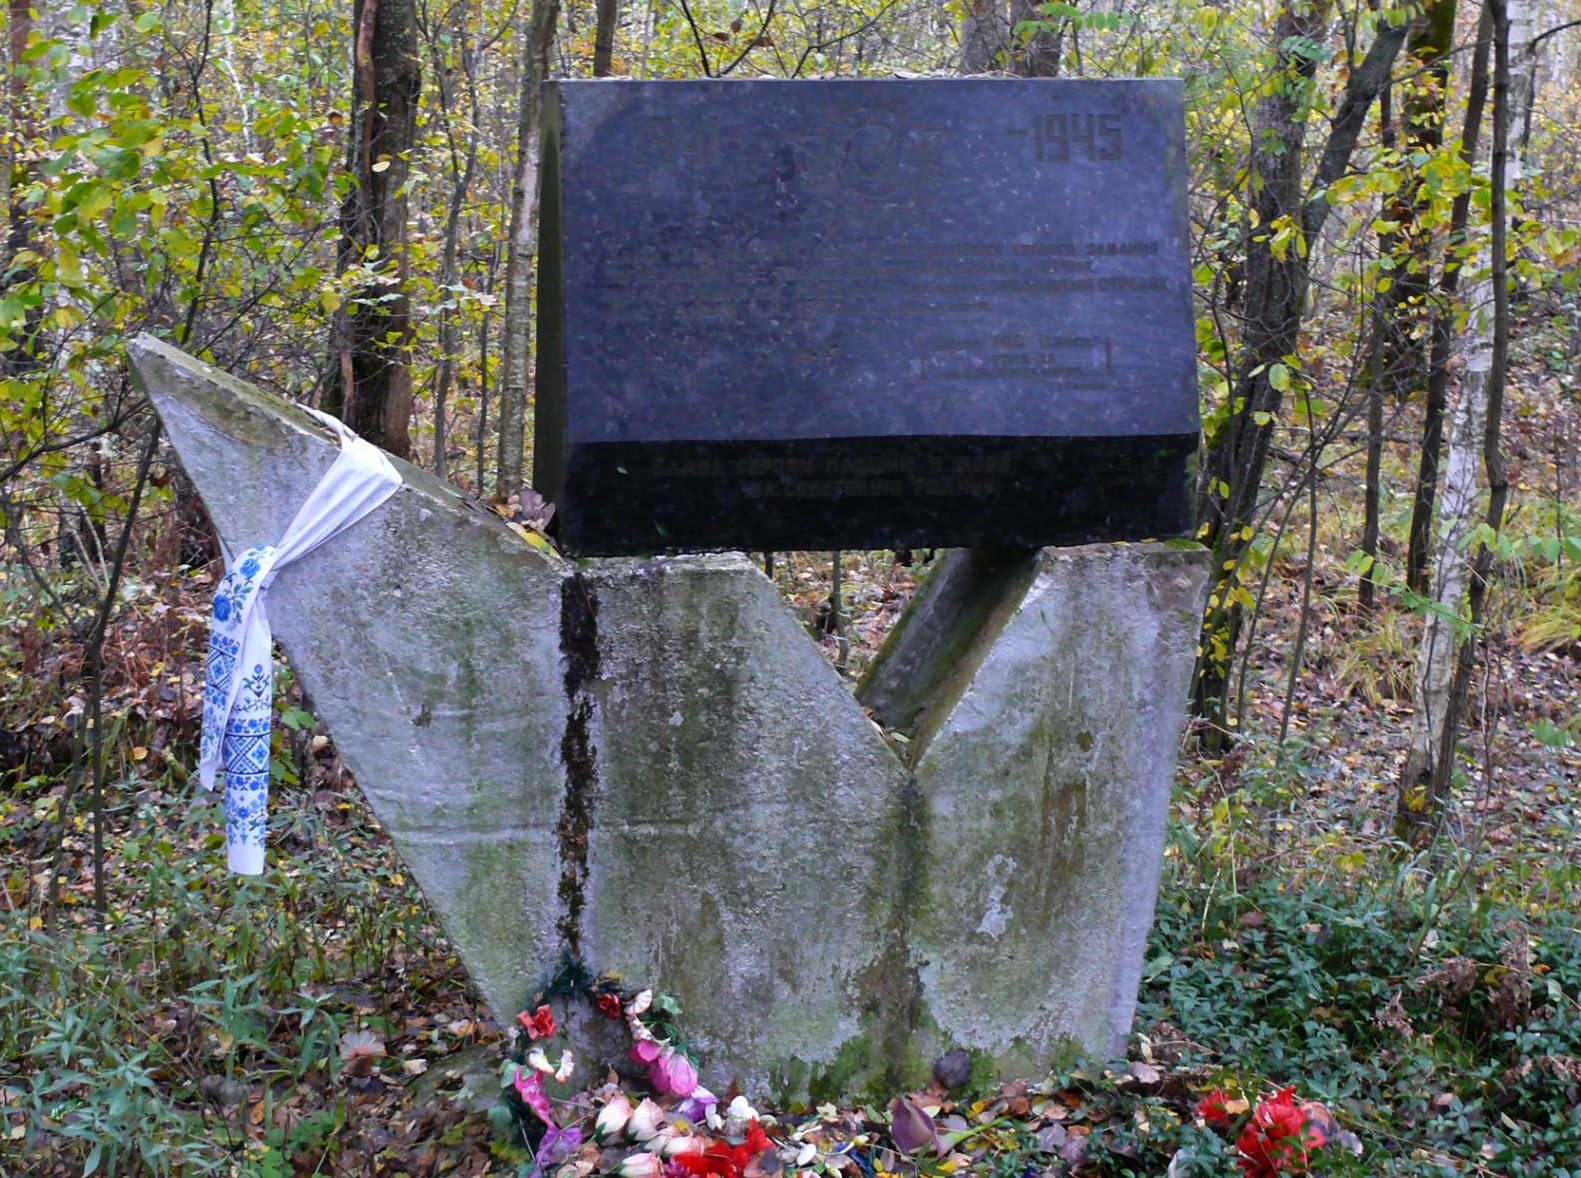 х. Коцюбинский, Чернобыльская зона отчуждения. Памятный знак на месте гибели экипажа 59-го Гвардейского авиаполка 3 октября 1943 года.